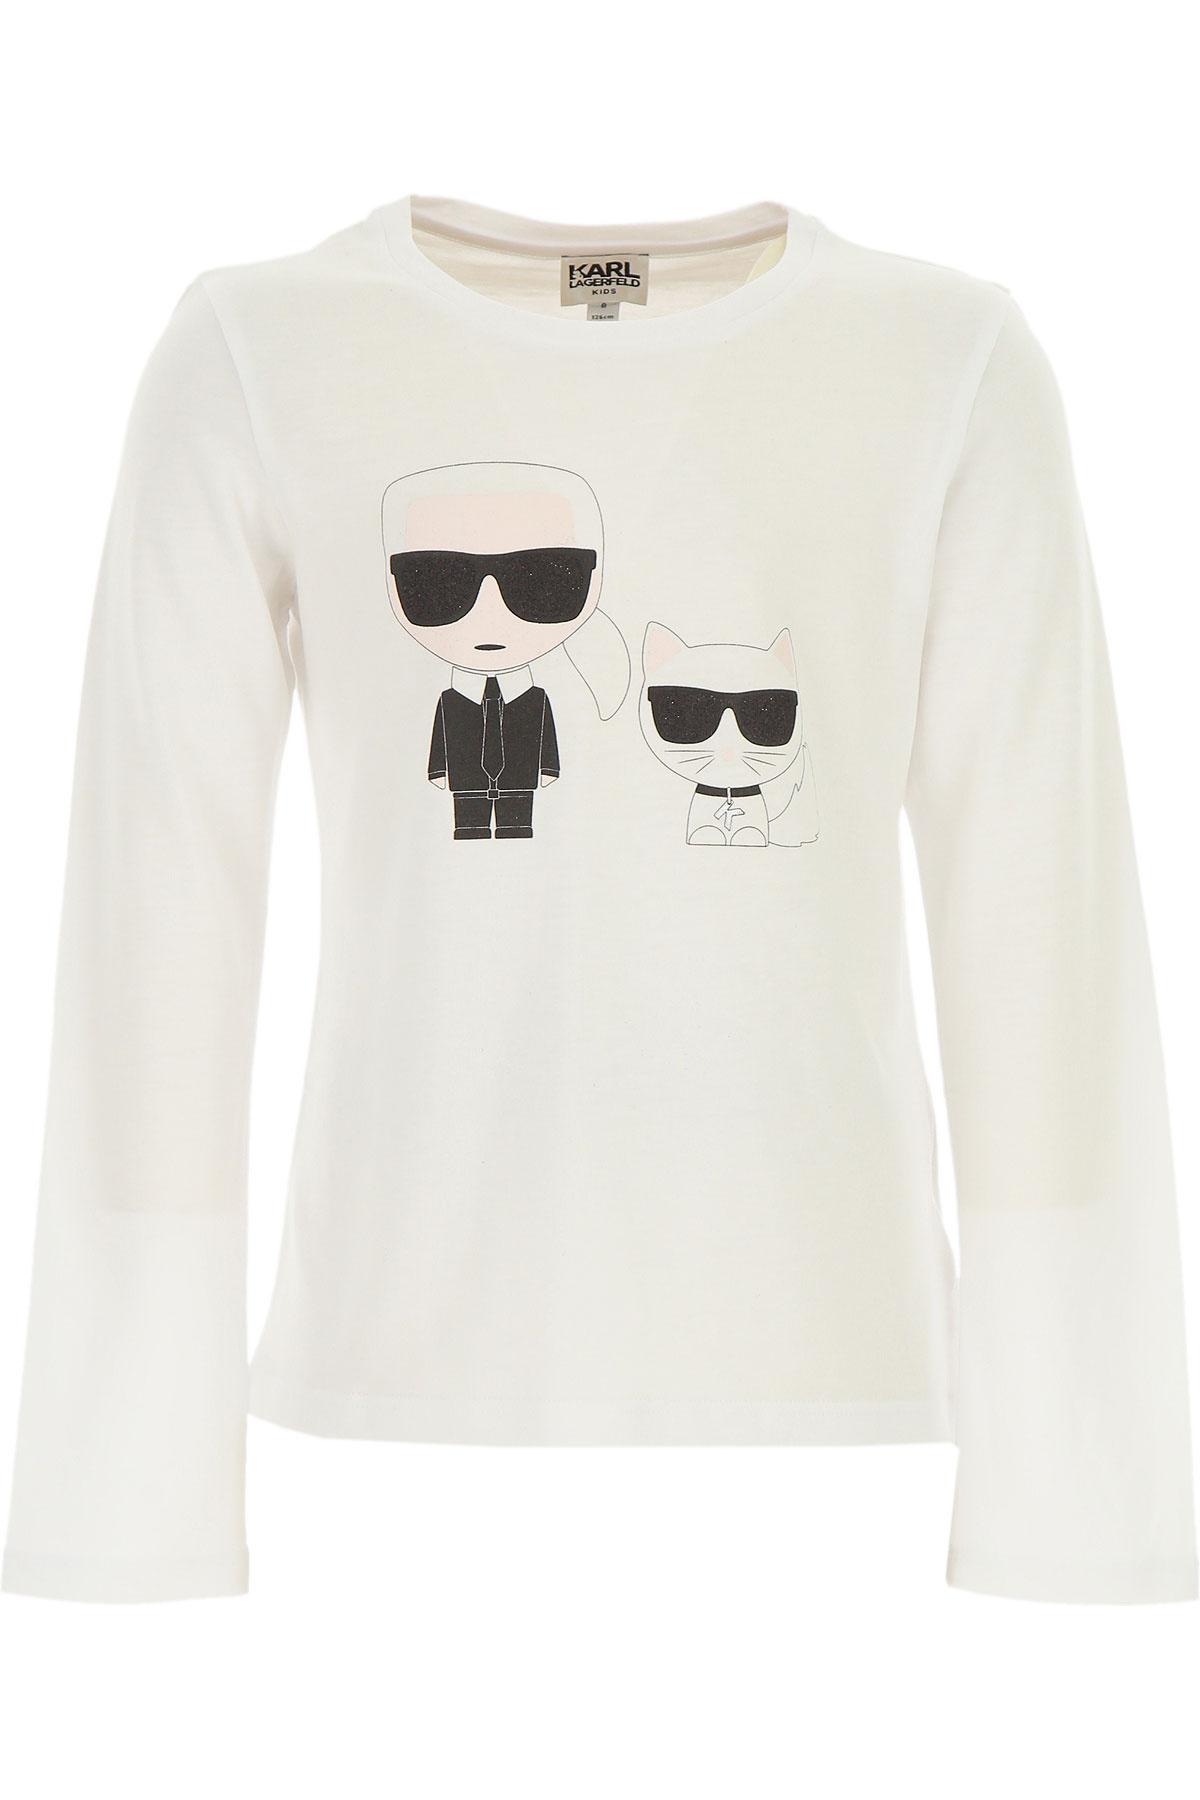 Karl Lagerfeld Kinder T-Shirt für Mädchen Günstig im Sale, Weiss, Baumwolle, 2017, 12Y 2Y 3Y 5Y 6Y 8Y